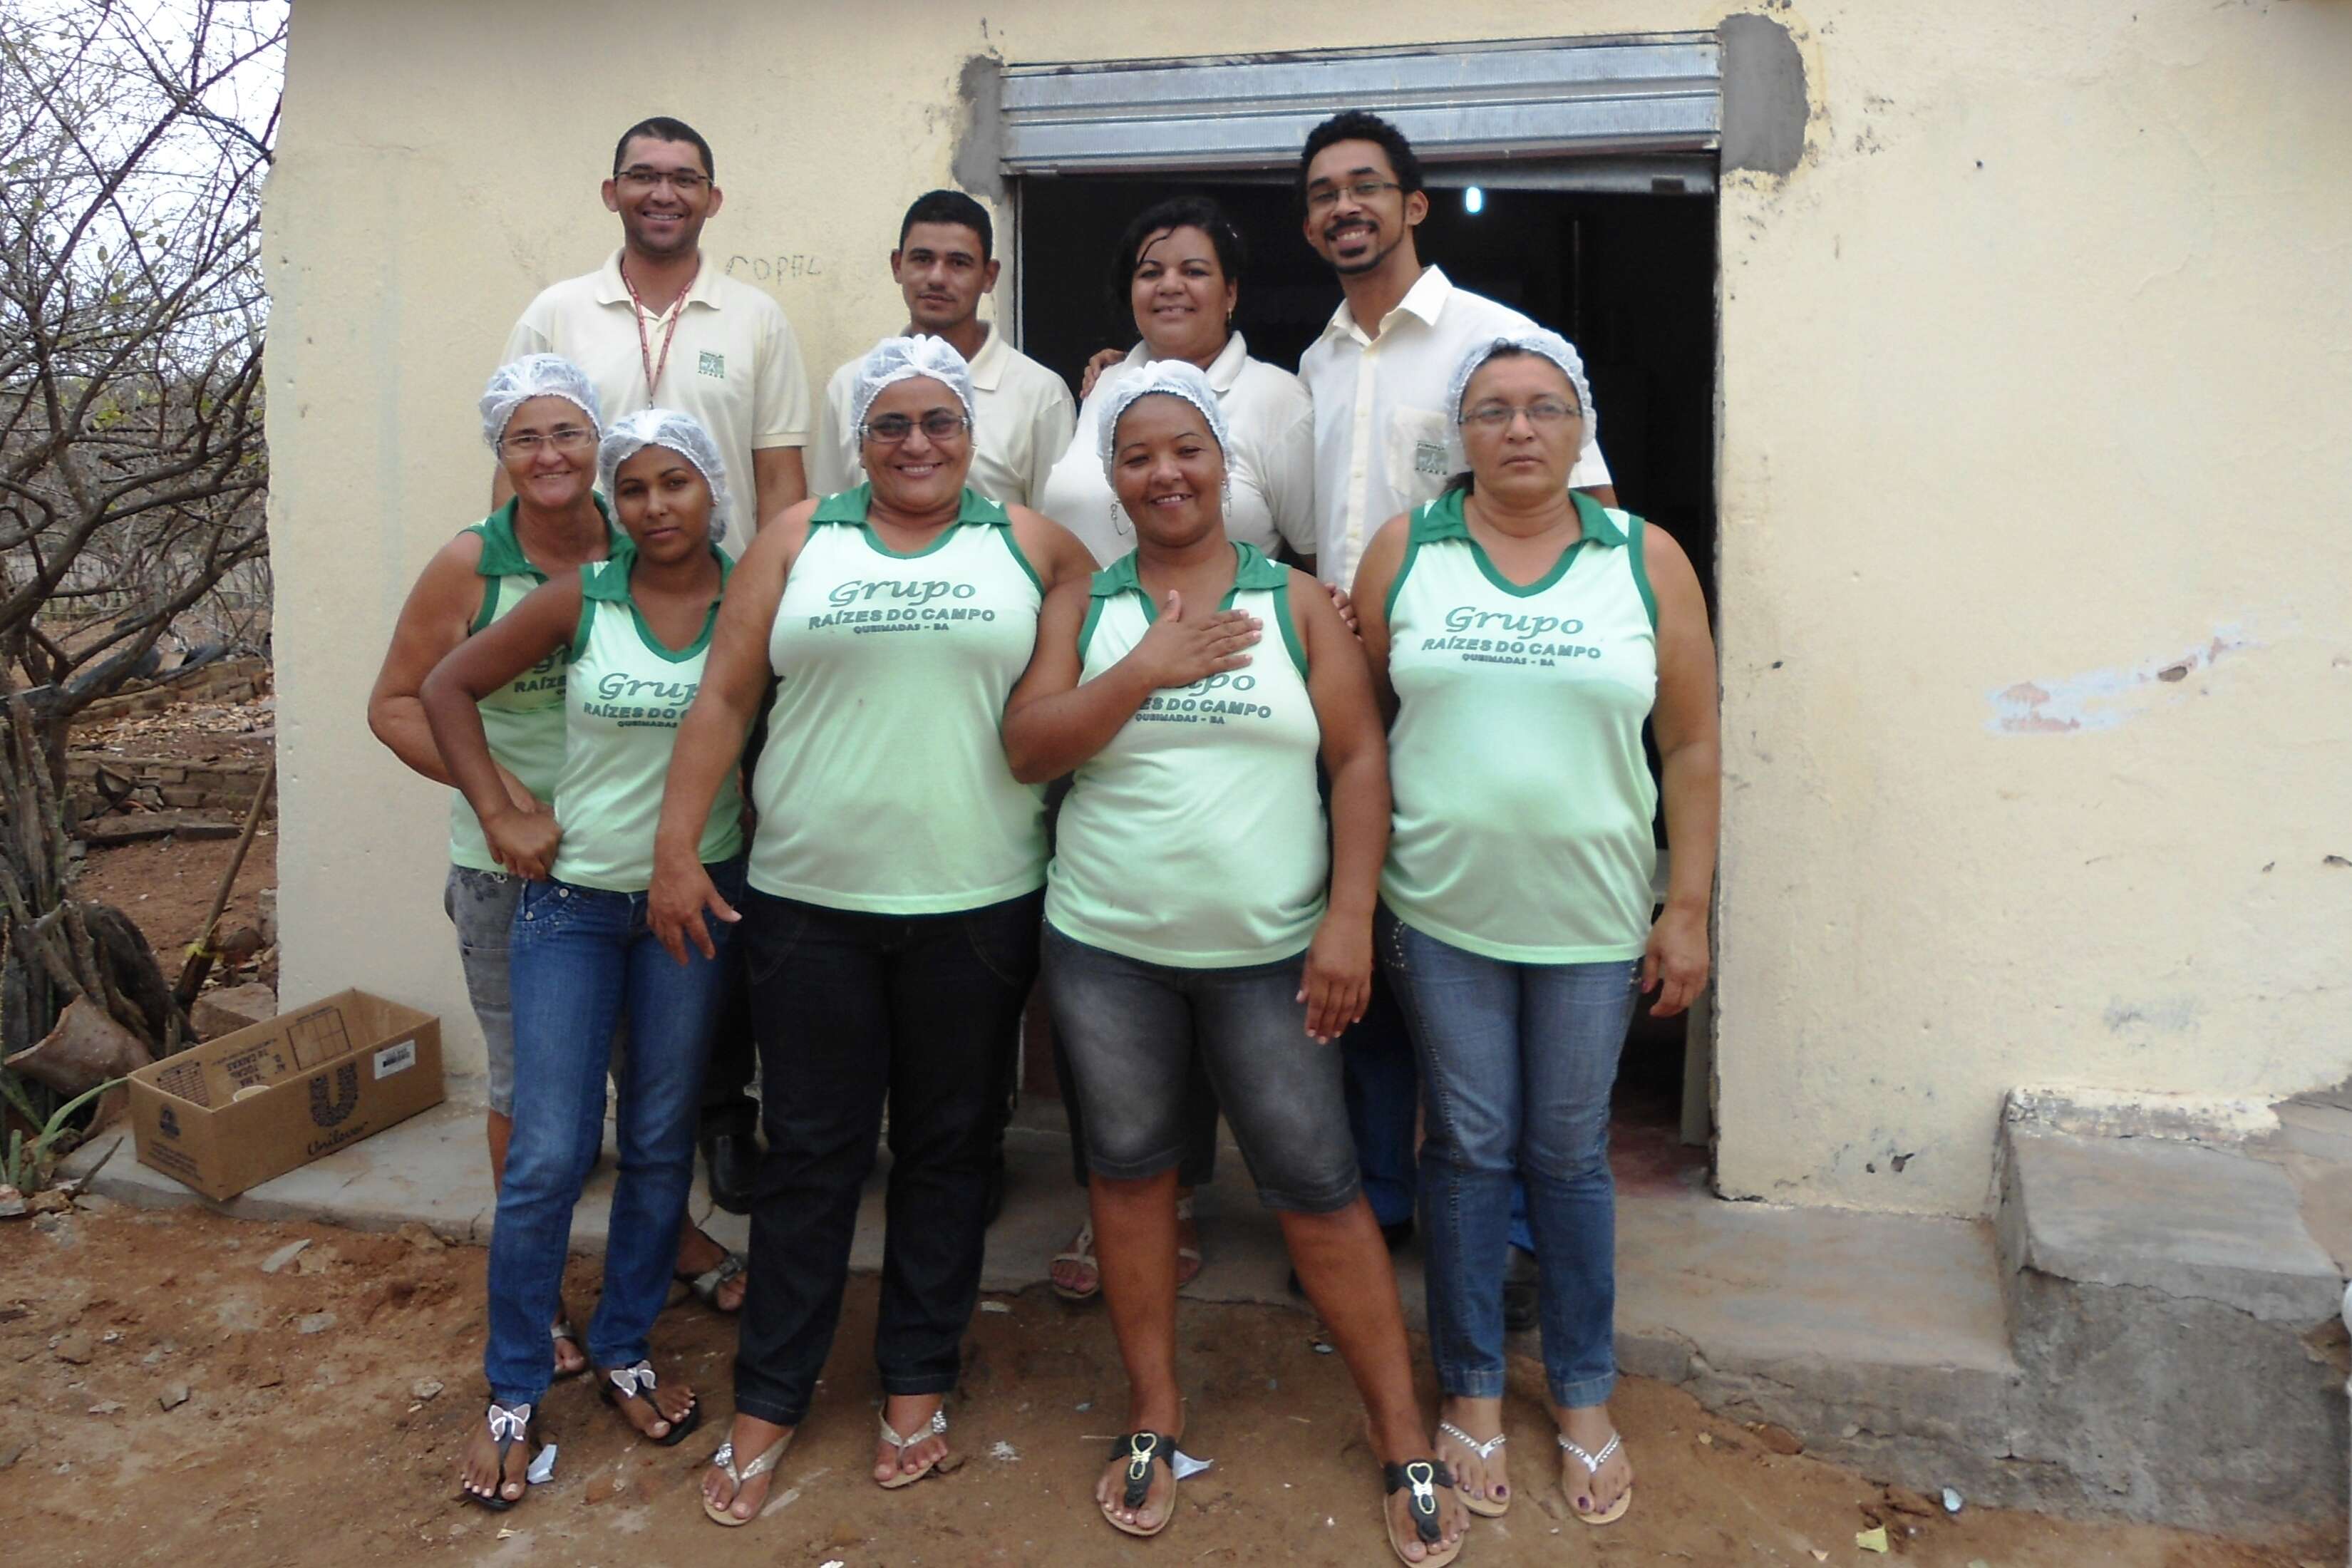 Grupo Raízes do Campo, de Valente - BA, apoiado pela Aliança Empreendedora através da organização APAEB